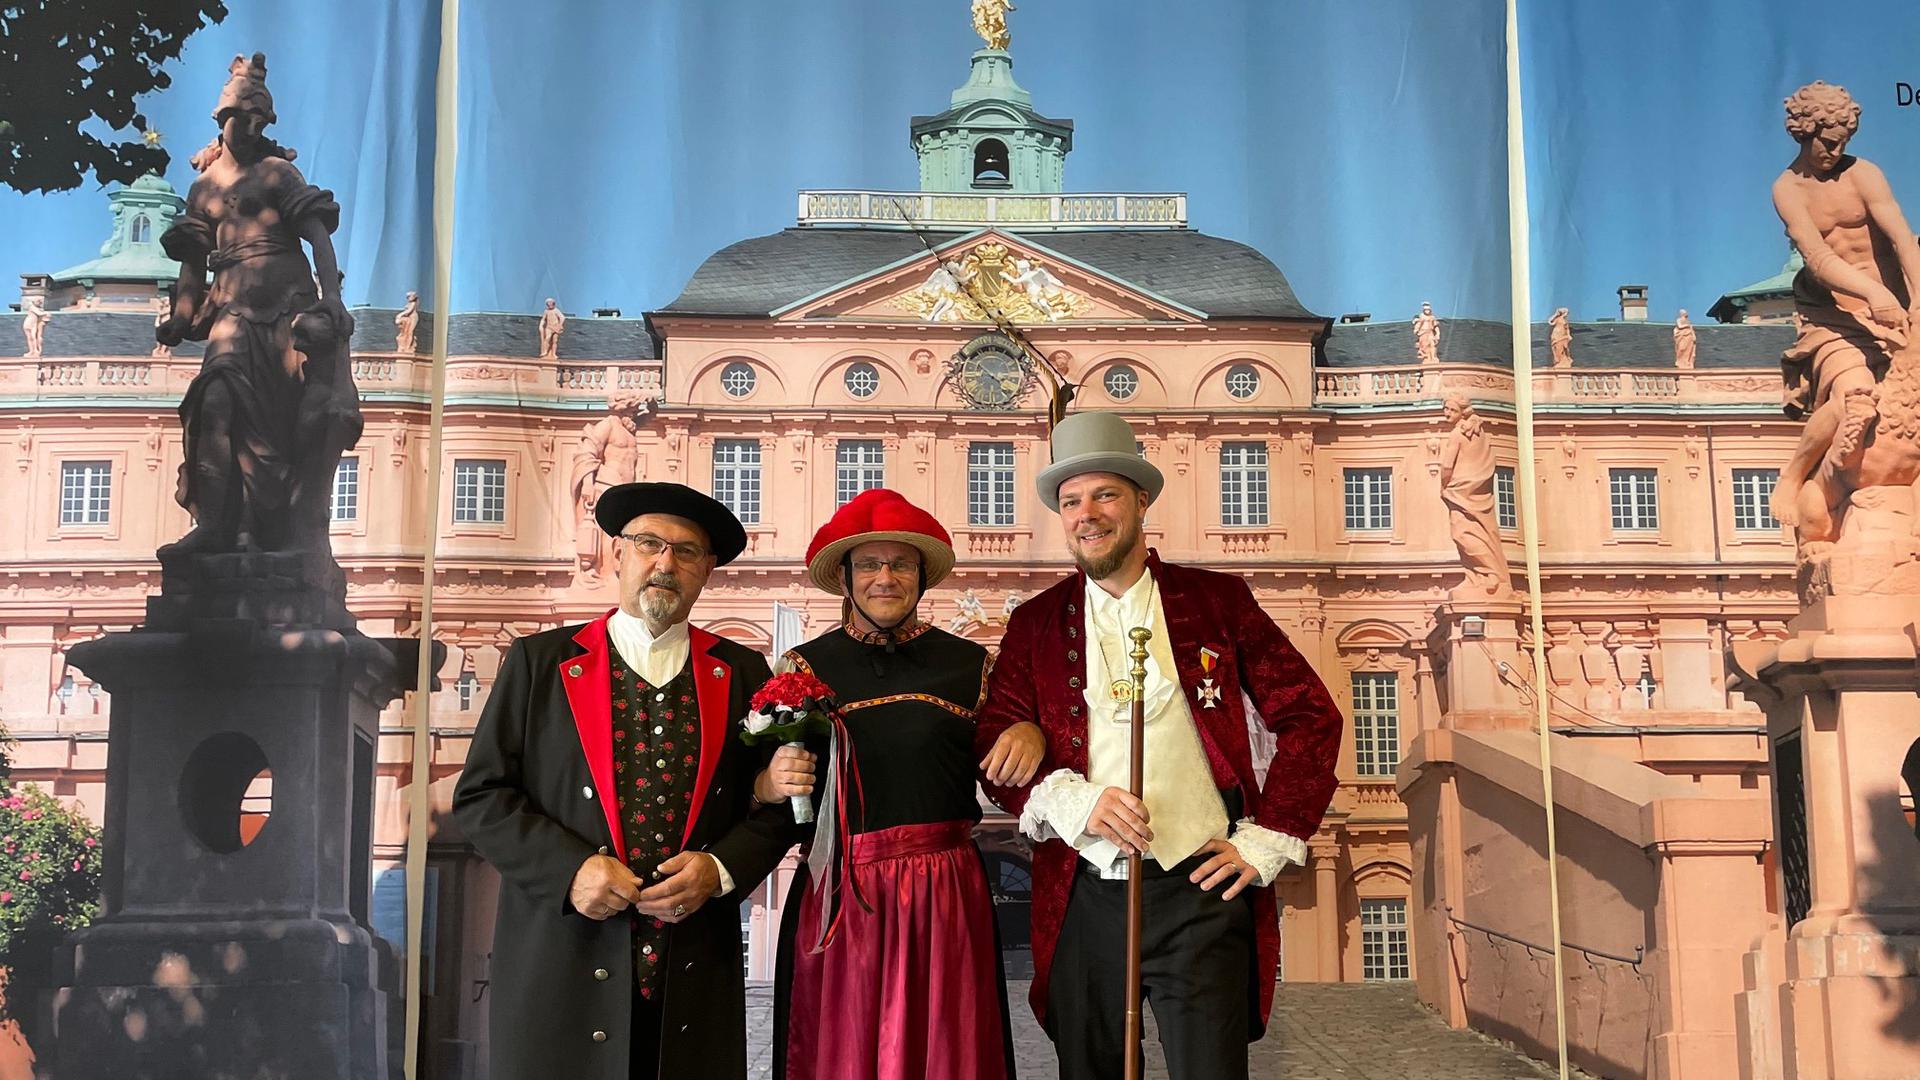 Nach Kölner Vorbild: Das Schwarzwald-Dreigestirn (von links) mit Holger Metzmeier (Bauer), Jochen Fuchs (Jungfrau) und Michael Matz (Edelmann) feiert Premiere.